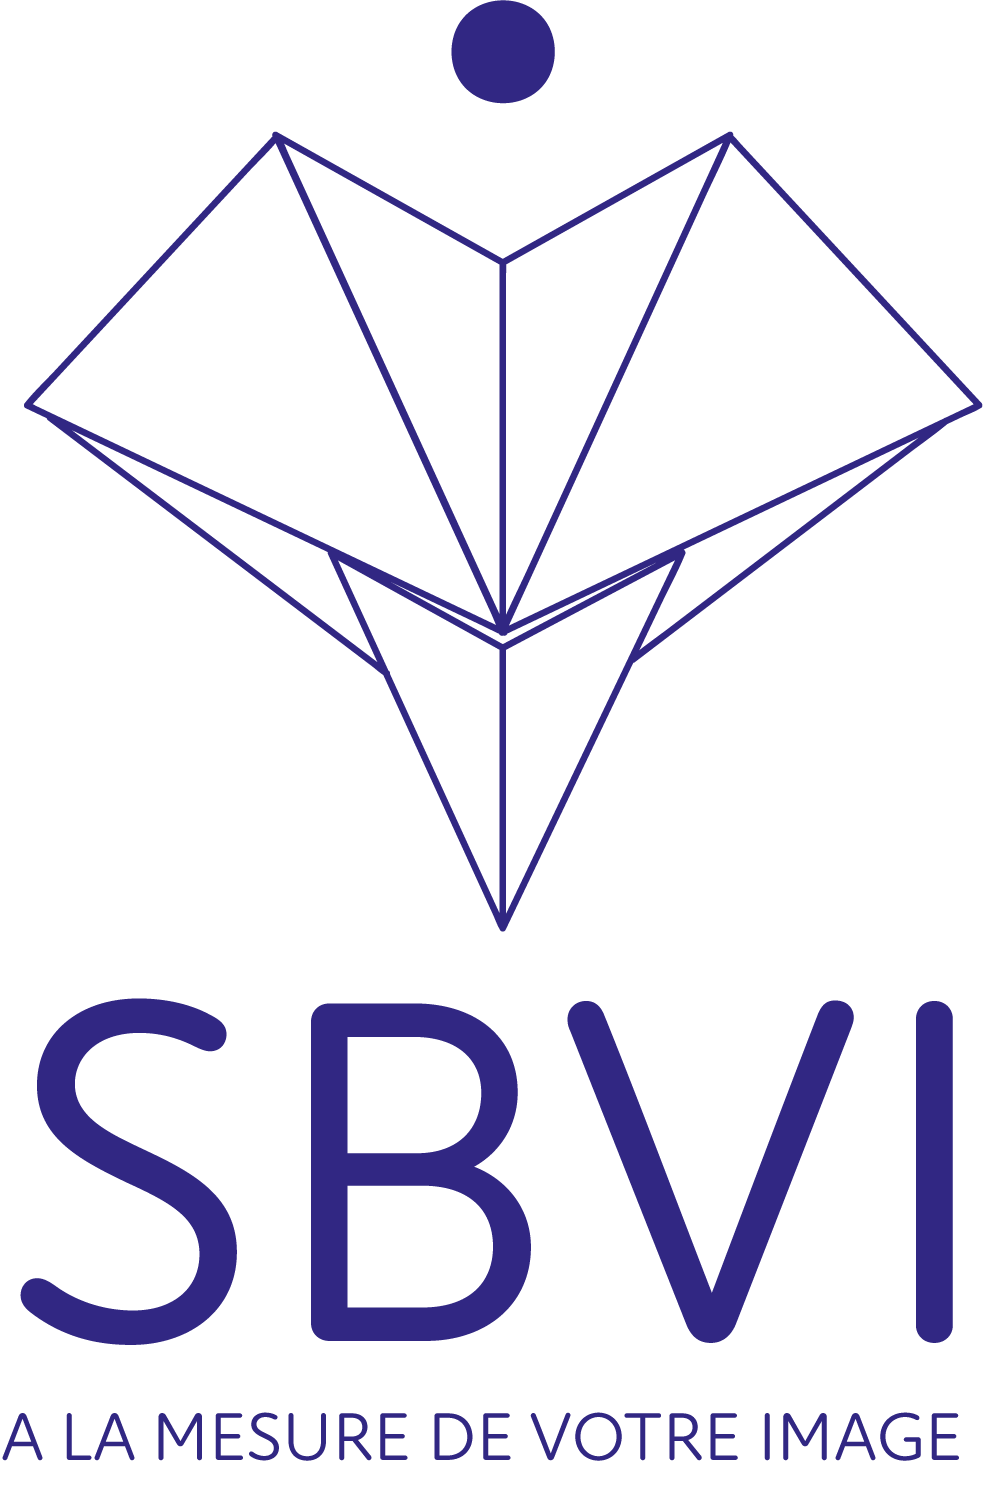 SBVI Le spécialiste en Vêtements d’image / Uniformes pour les réseaux de transports urbains et inter-urbains